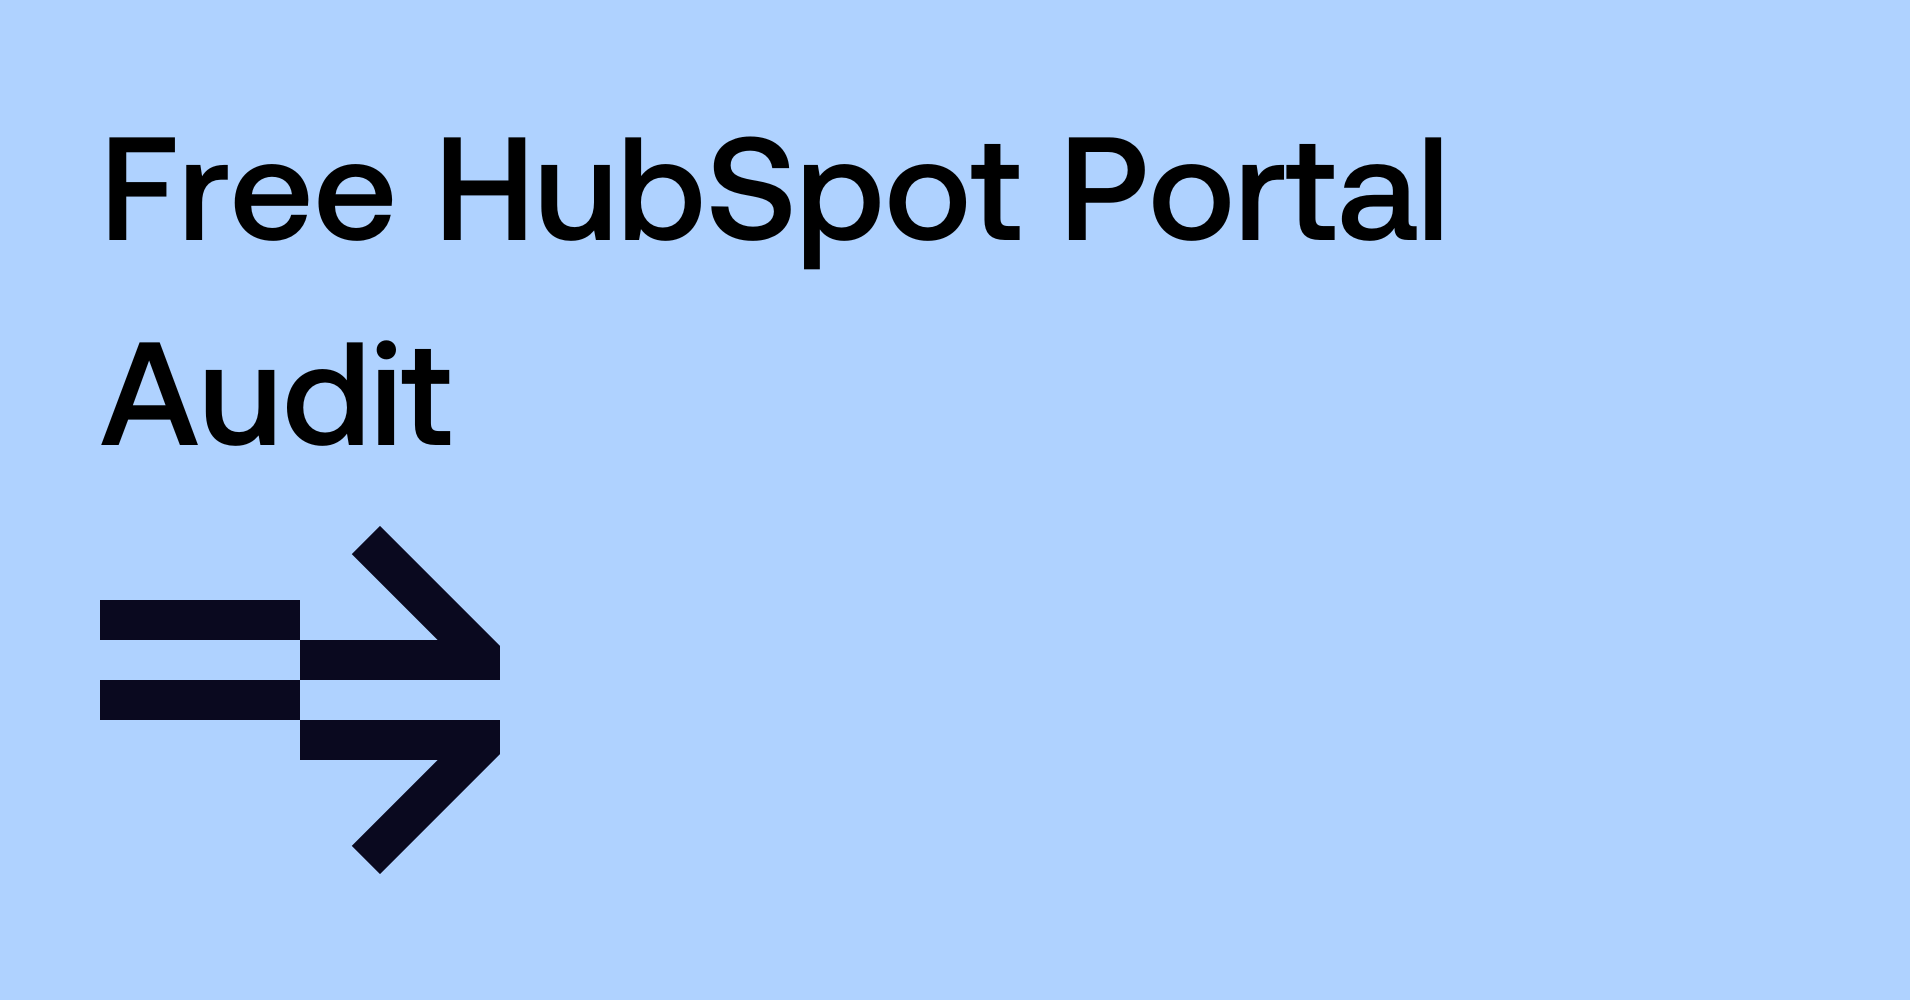 Free HubSpot Portal